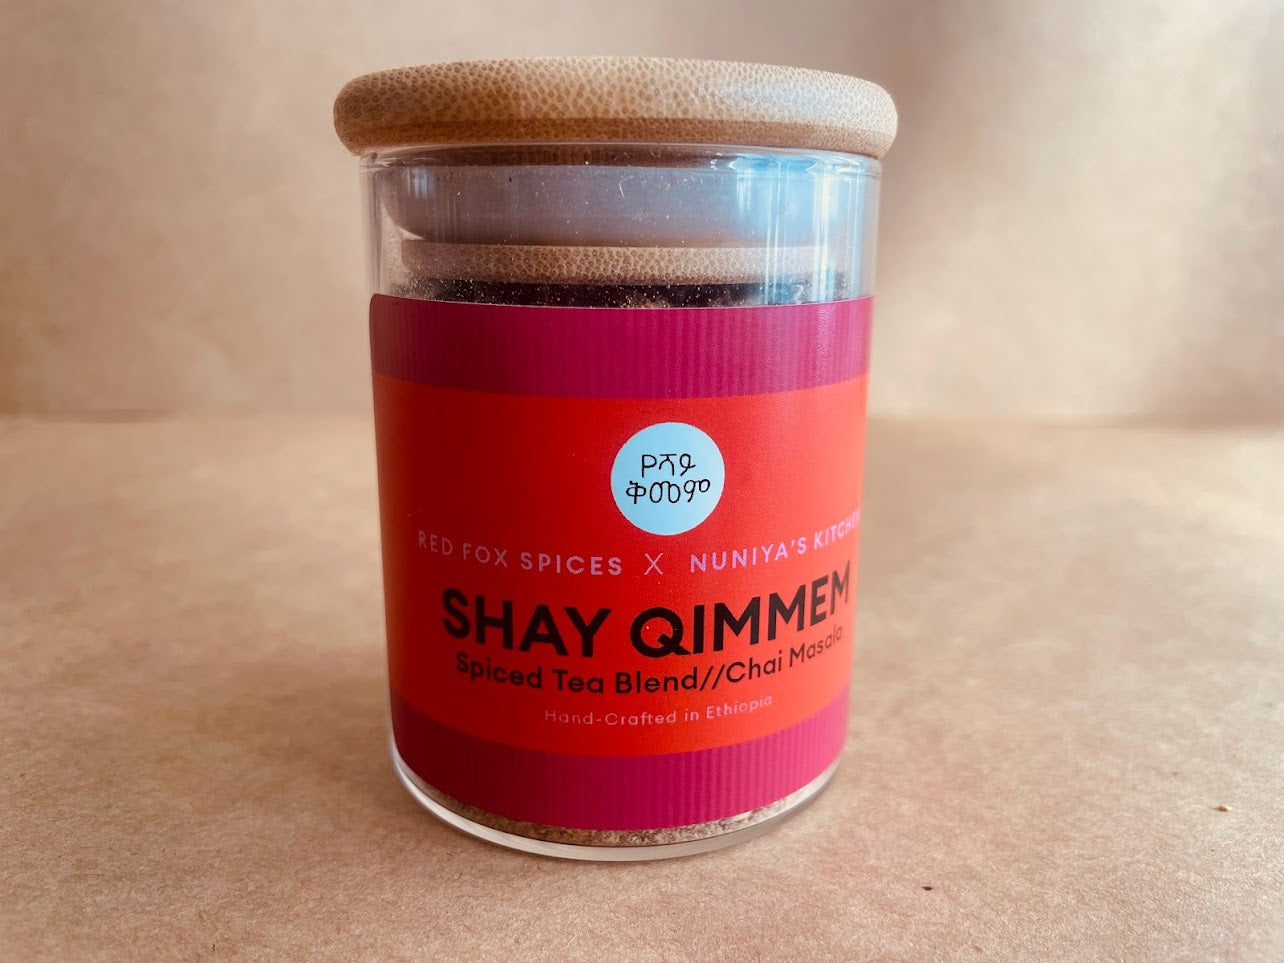 Shay Qimmem | Spiced Tea Blend (Chai Masala)